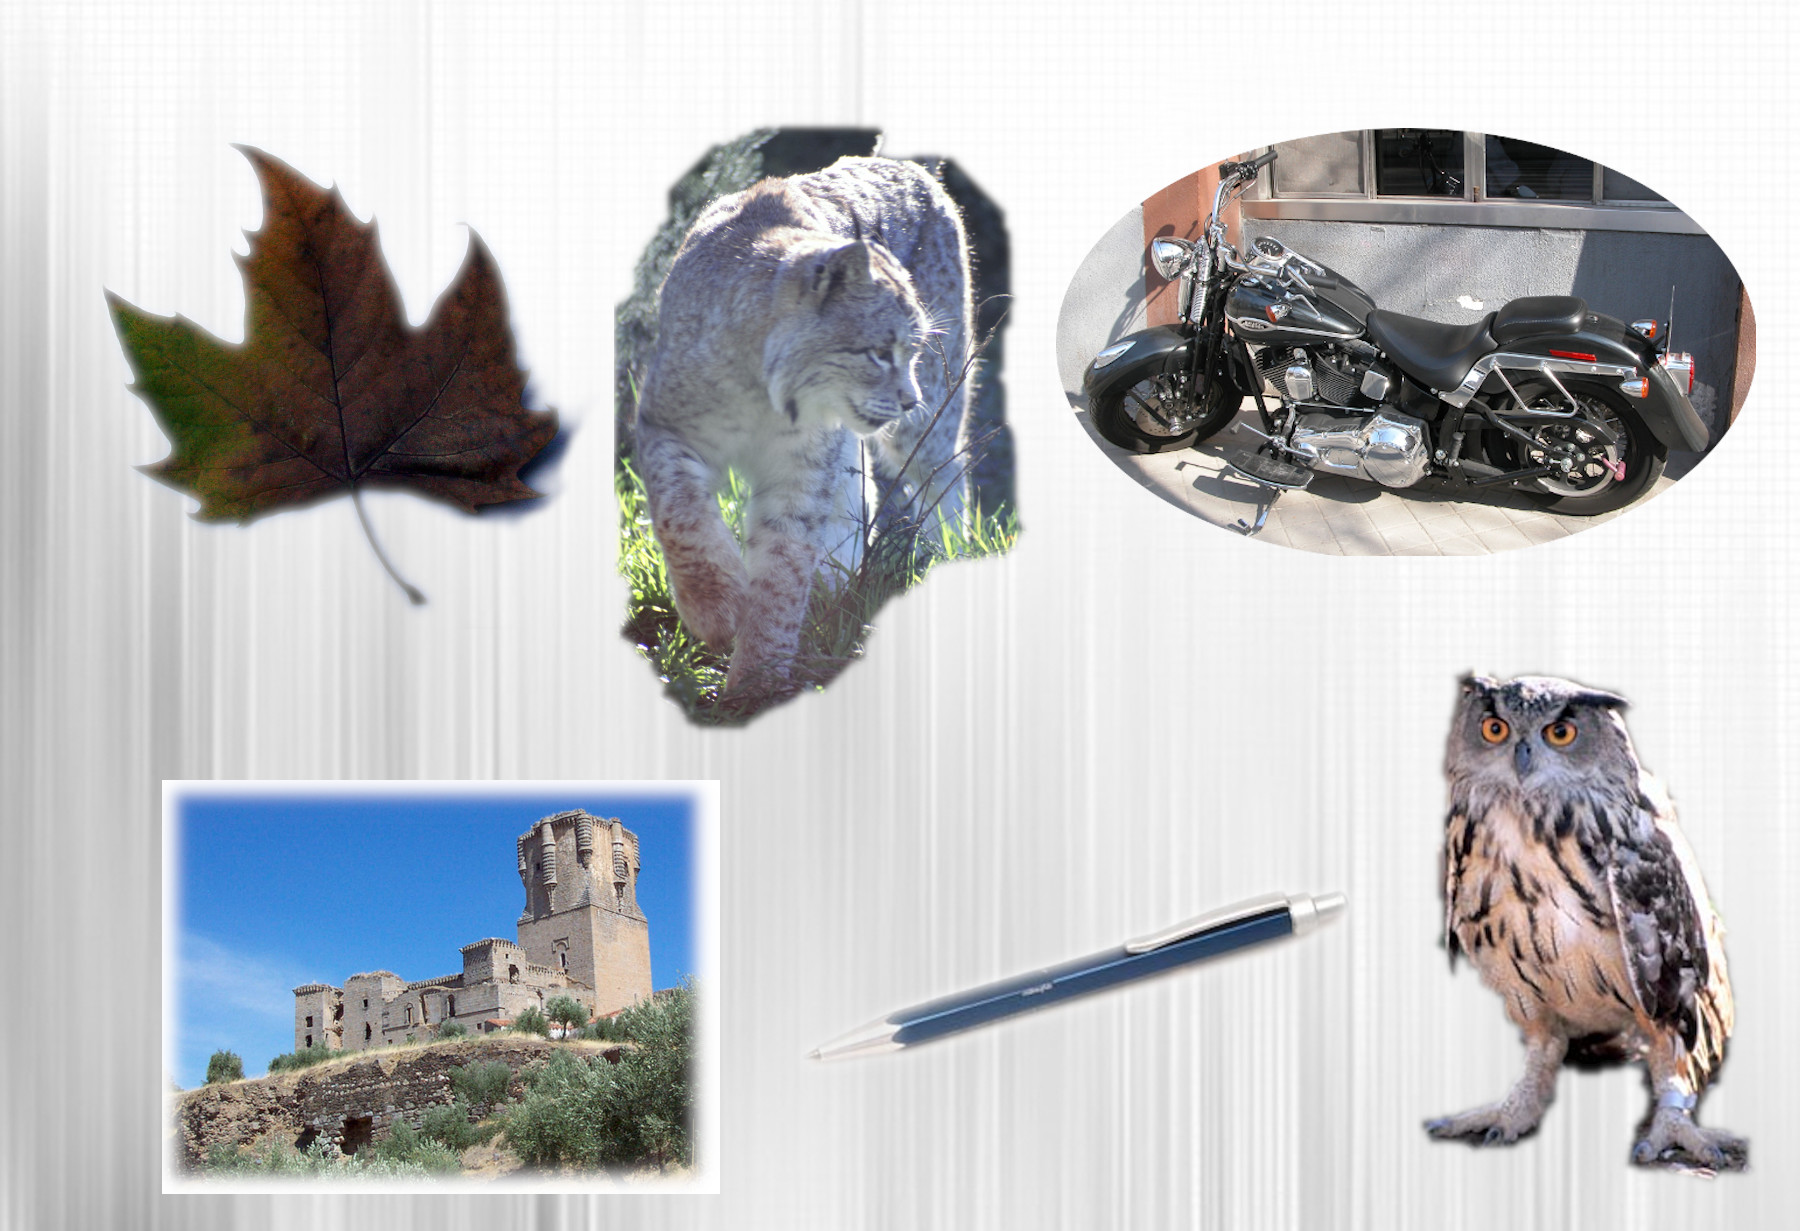 La imagen muestra un collage de imágenes formado por una hoja de árbol, un bolígrafo, una moto, un castillo, un buho y un lince